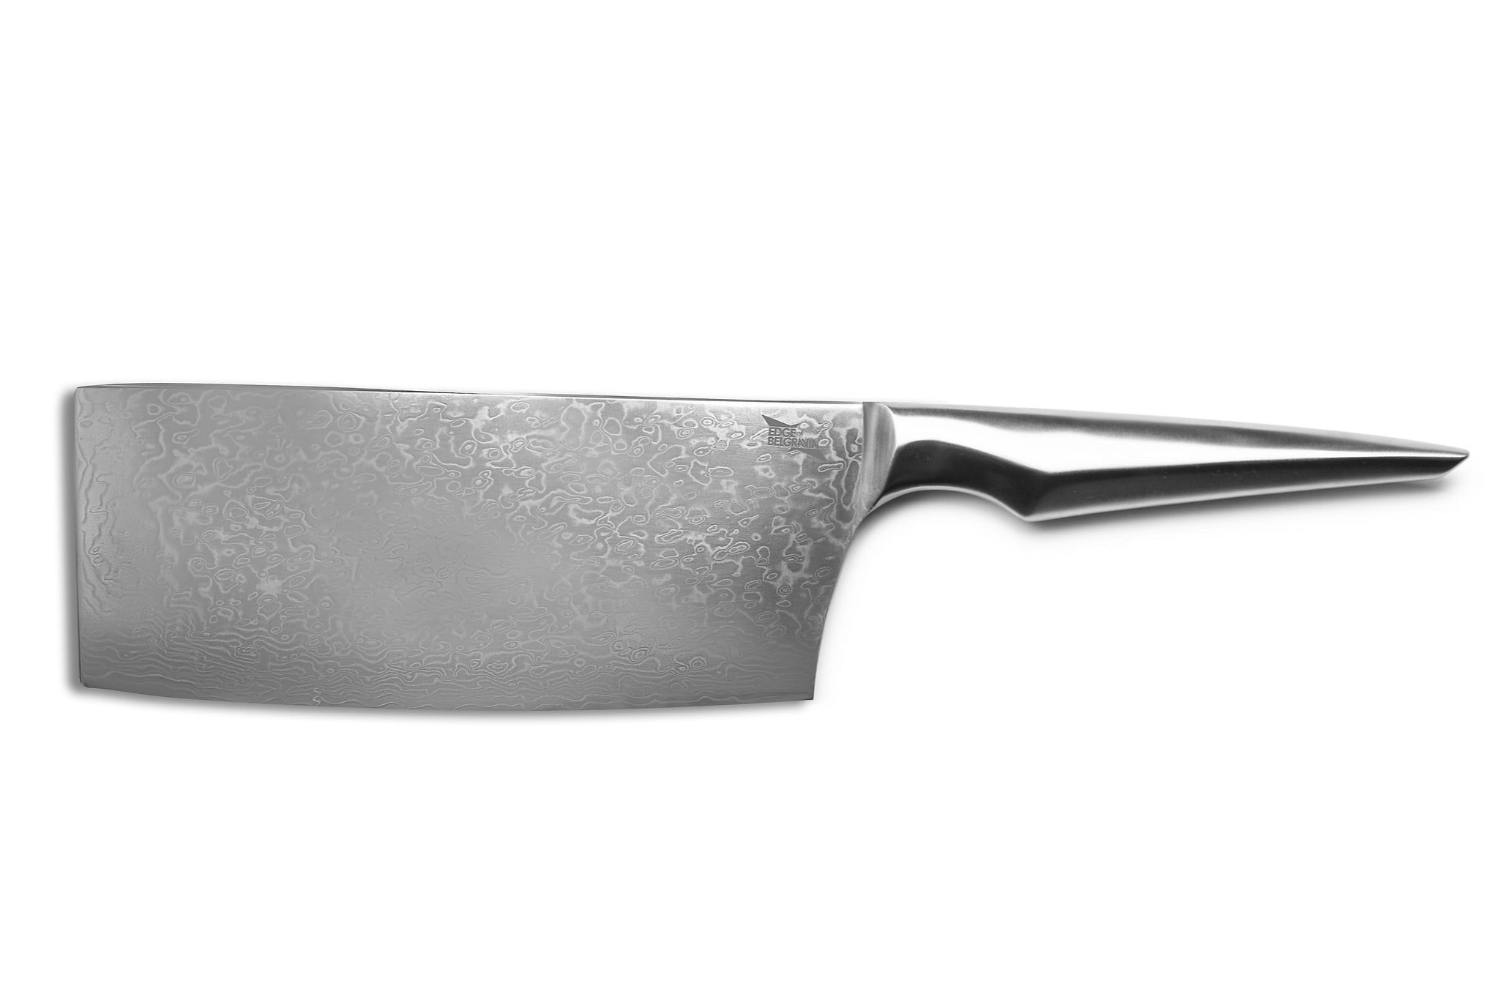 Edge of Belgravia Shiroi Hana Vegetable Cleaver Knife